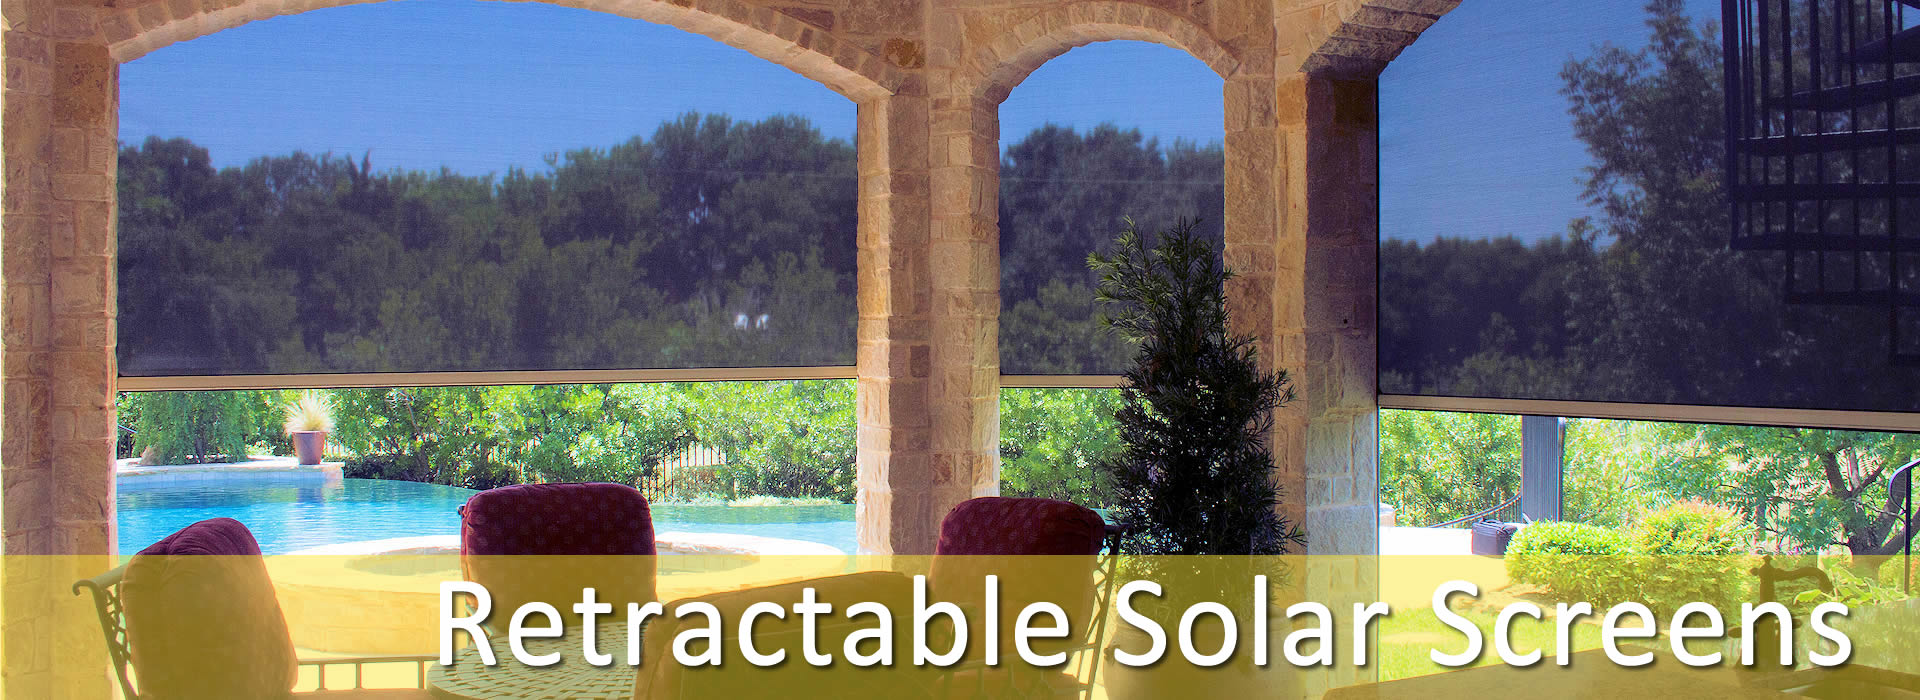 Retractable Solar Screens